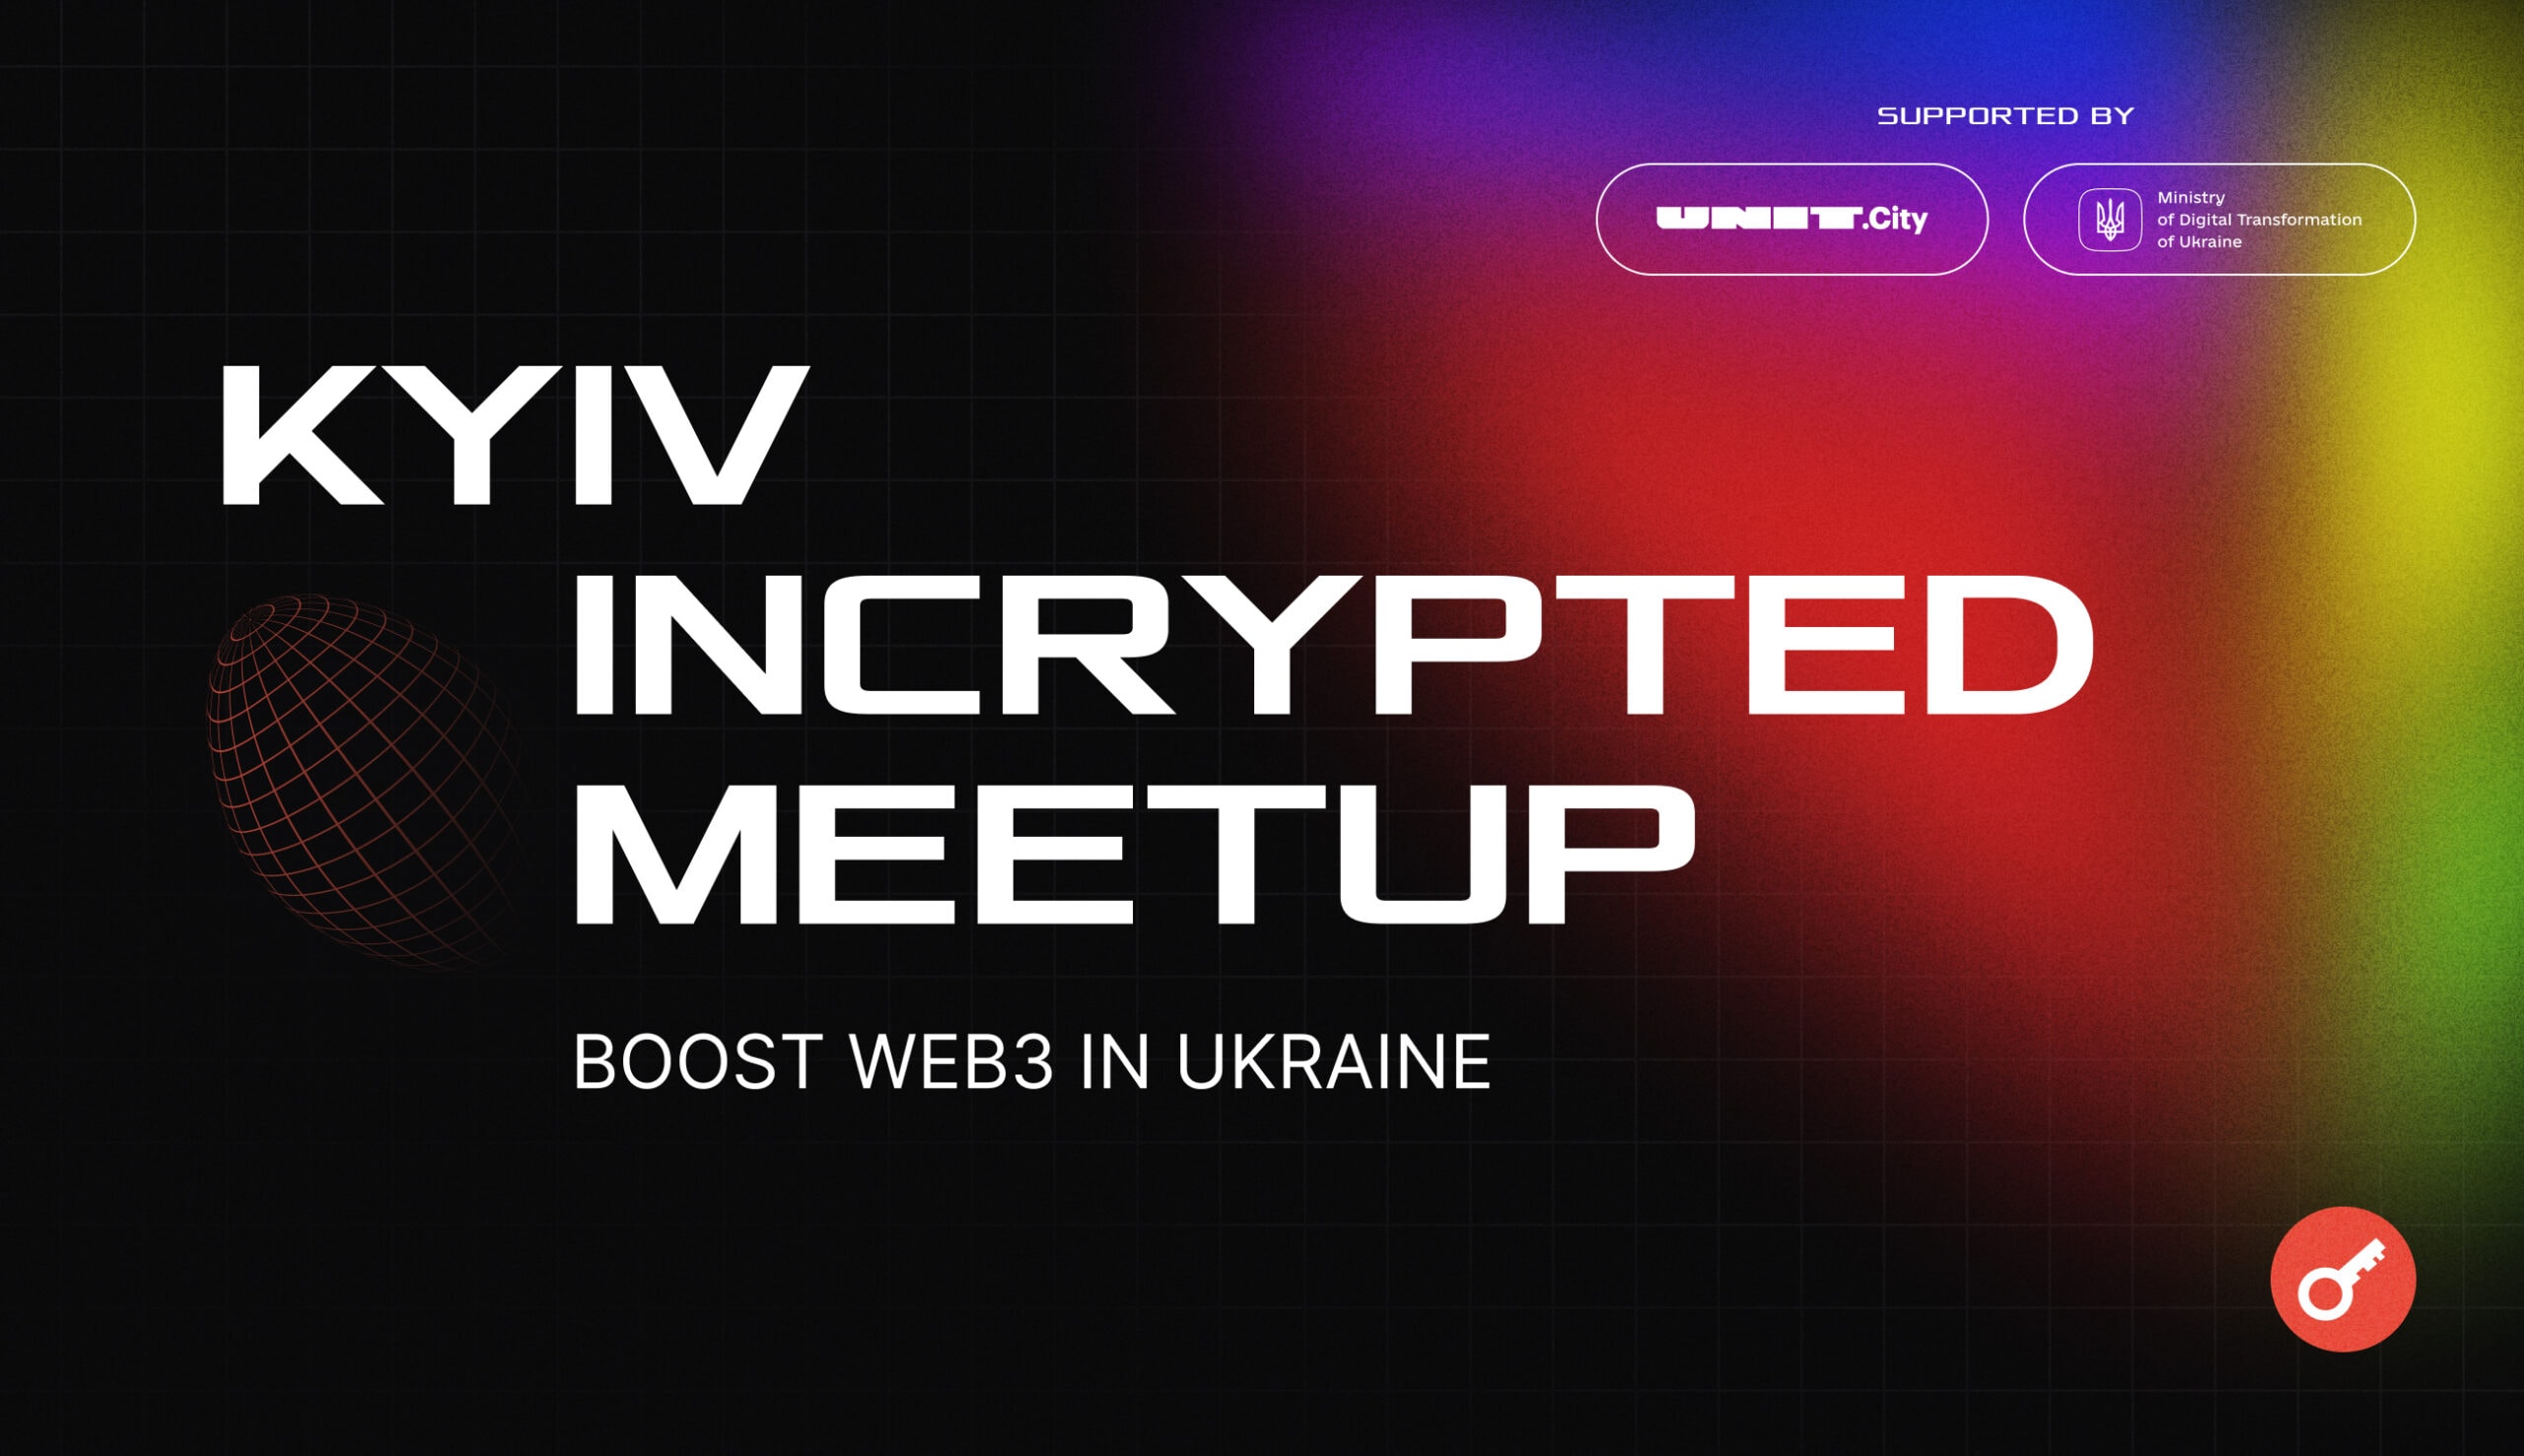 Kyiv Incrypted Meetup в UNIT.city стал крупнейшим крипто-ивентом с начала войны. Заглавный коллаж новости.